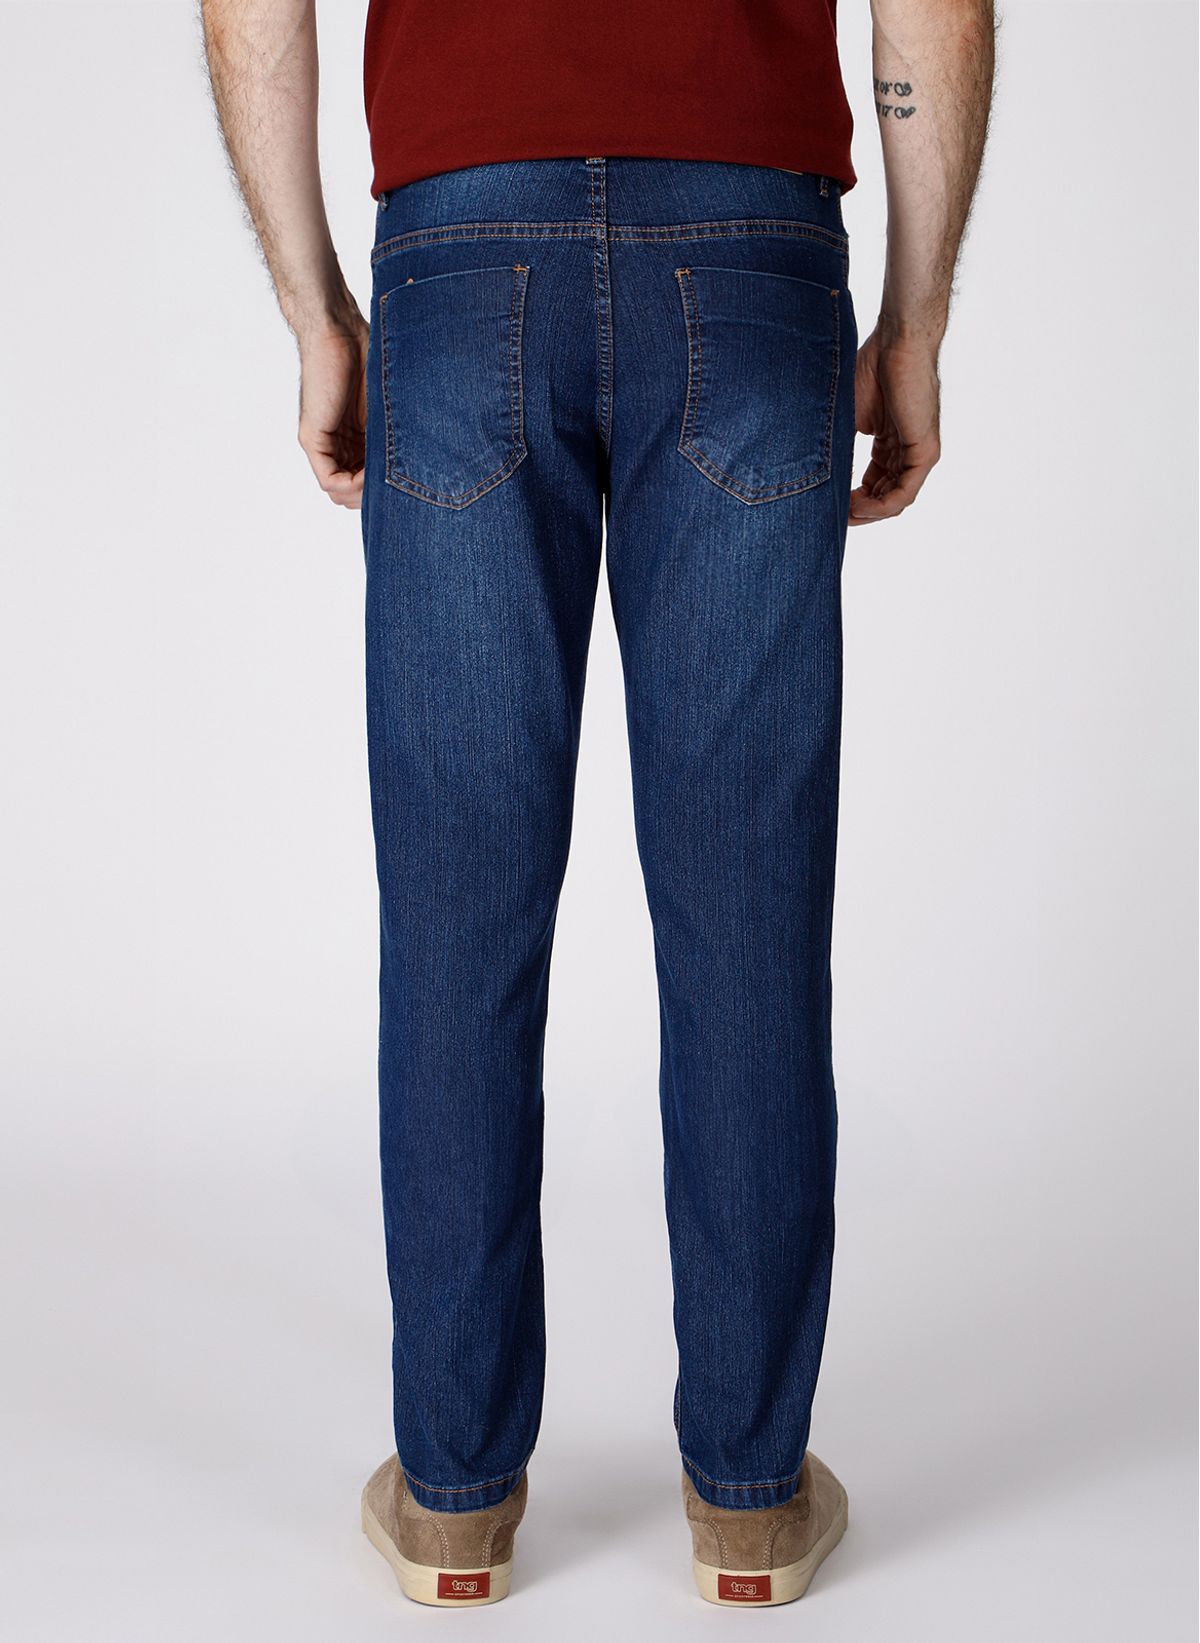 Calça jeans masculina: veja como usar essa peça versátil e